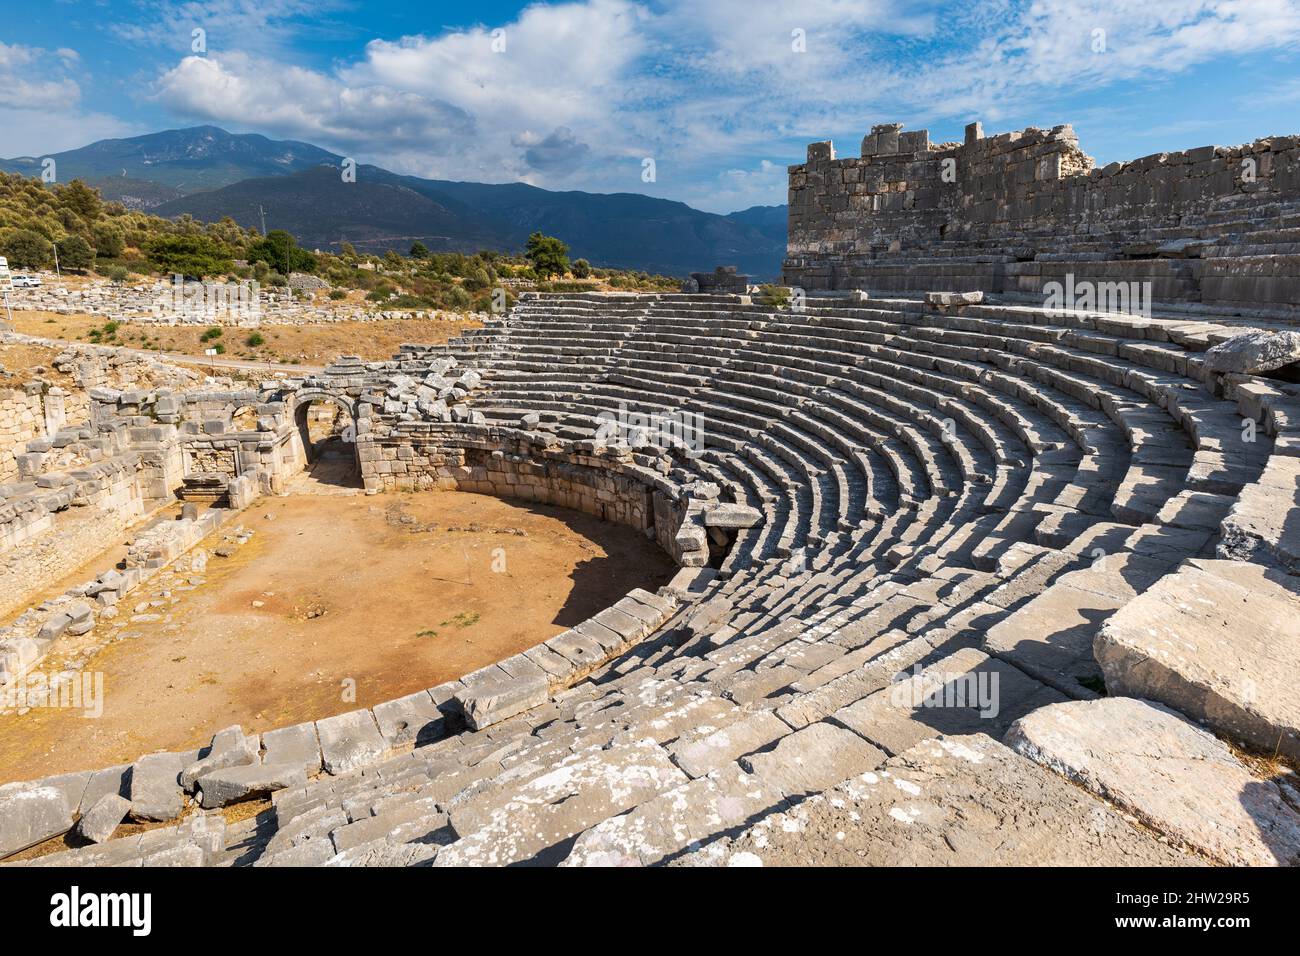 Yacimiento arqueológico de Xanthos en Turquía. Xanthos, que fue la capital de la antigua Lycia y está en la lista de Patrimonio de la Humanidad de la UNESCO. Foto de stock